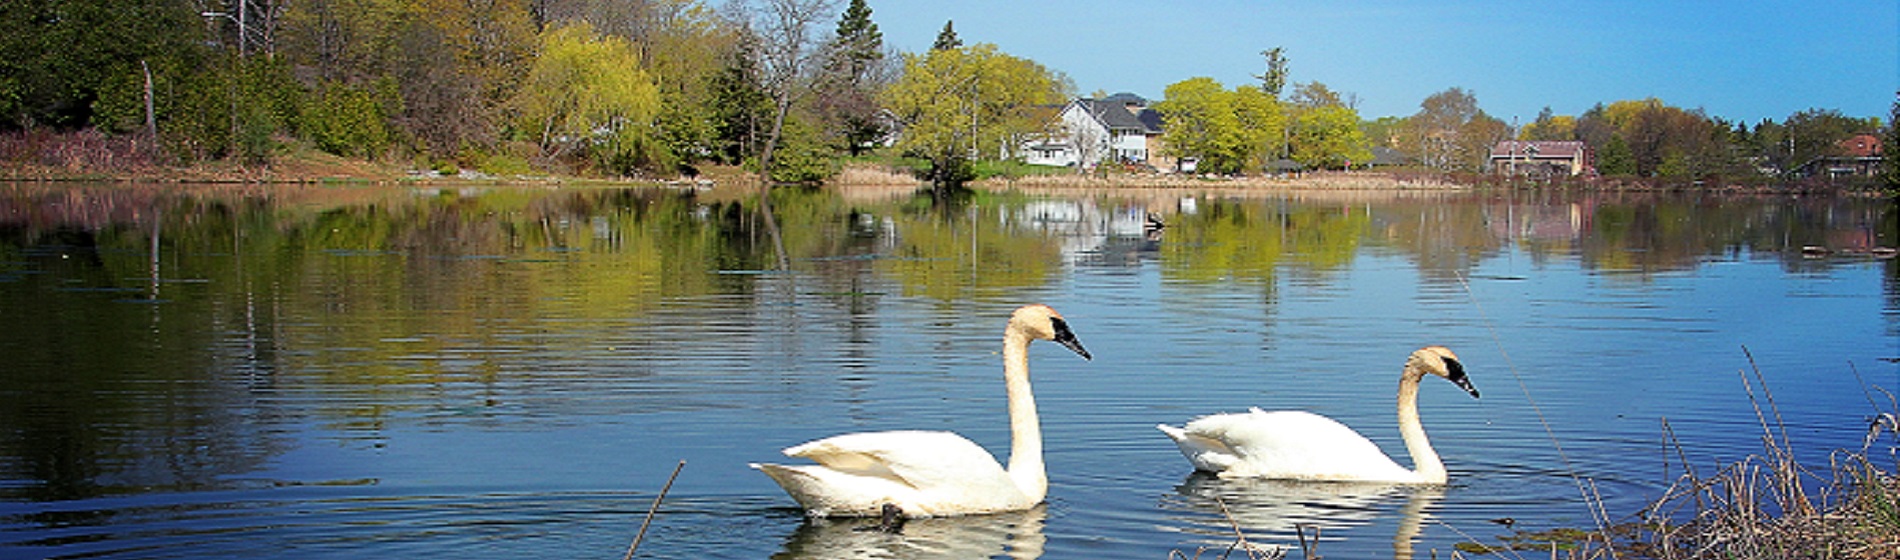 2 swans floating on elgin pond